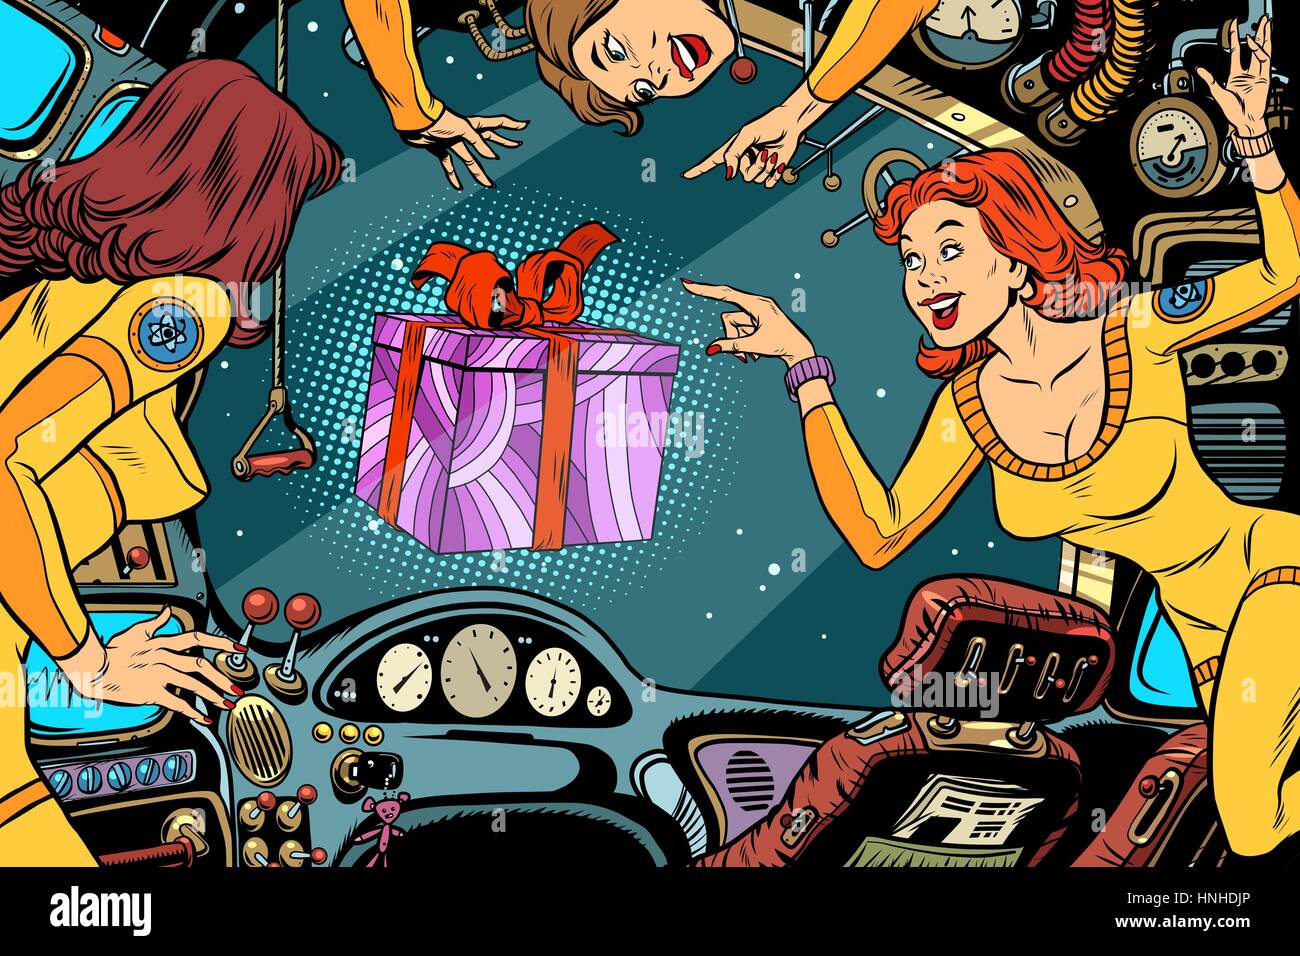 Les femmes astronautes dans la cabine d'un vaisseau et boîte-cadeau. Comics Vintage Retro pop art illustration couleur. La journée internationale des femmes et des mères de jour Illustration de Vecteur